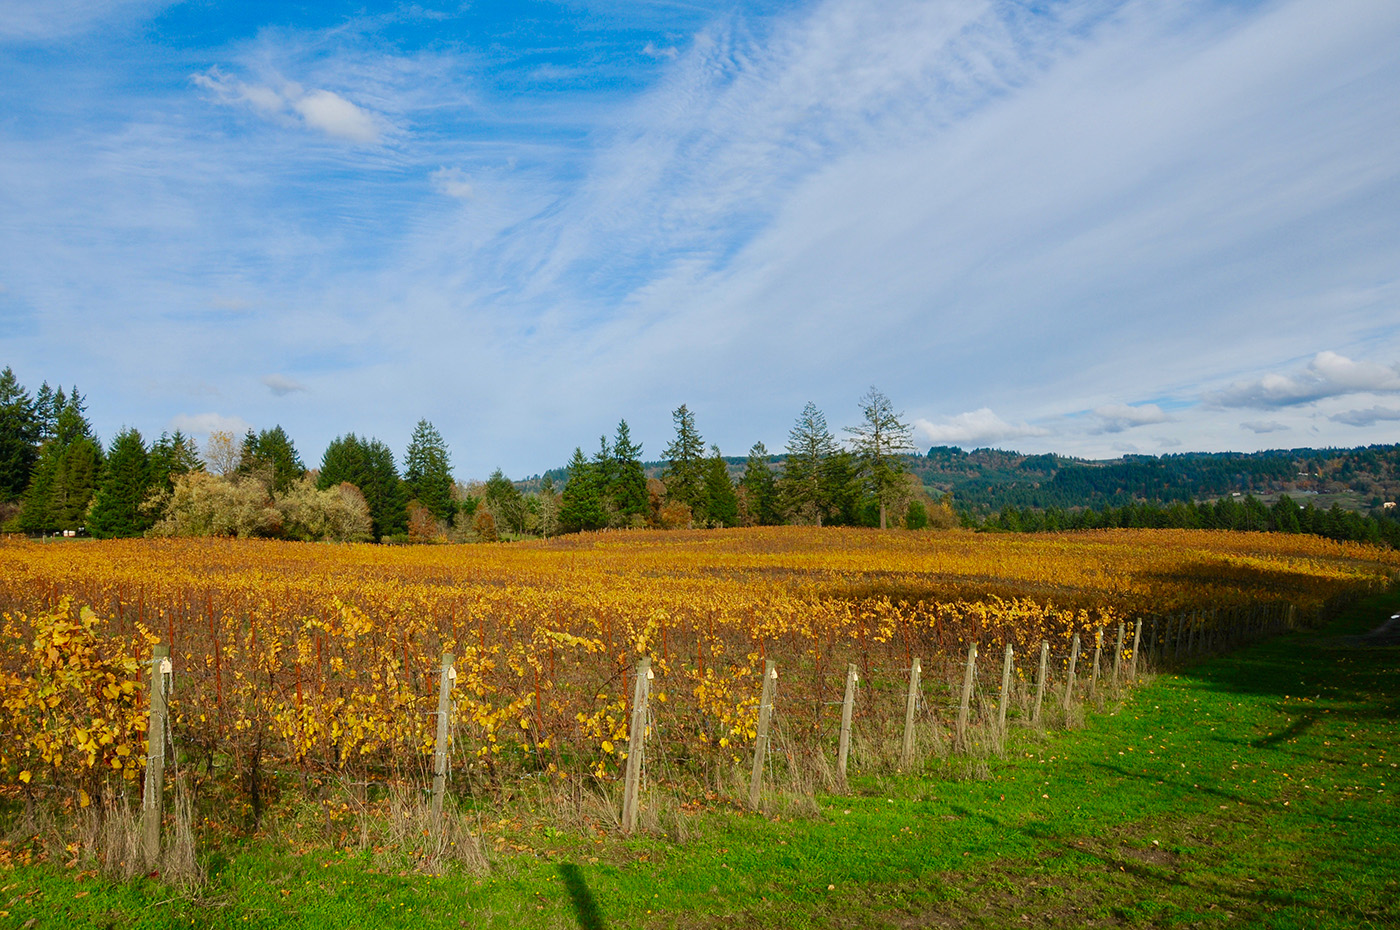 Willamette Valley vineyard in fall